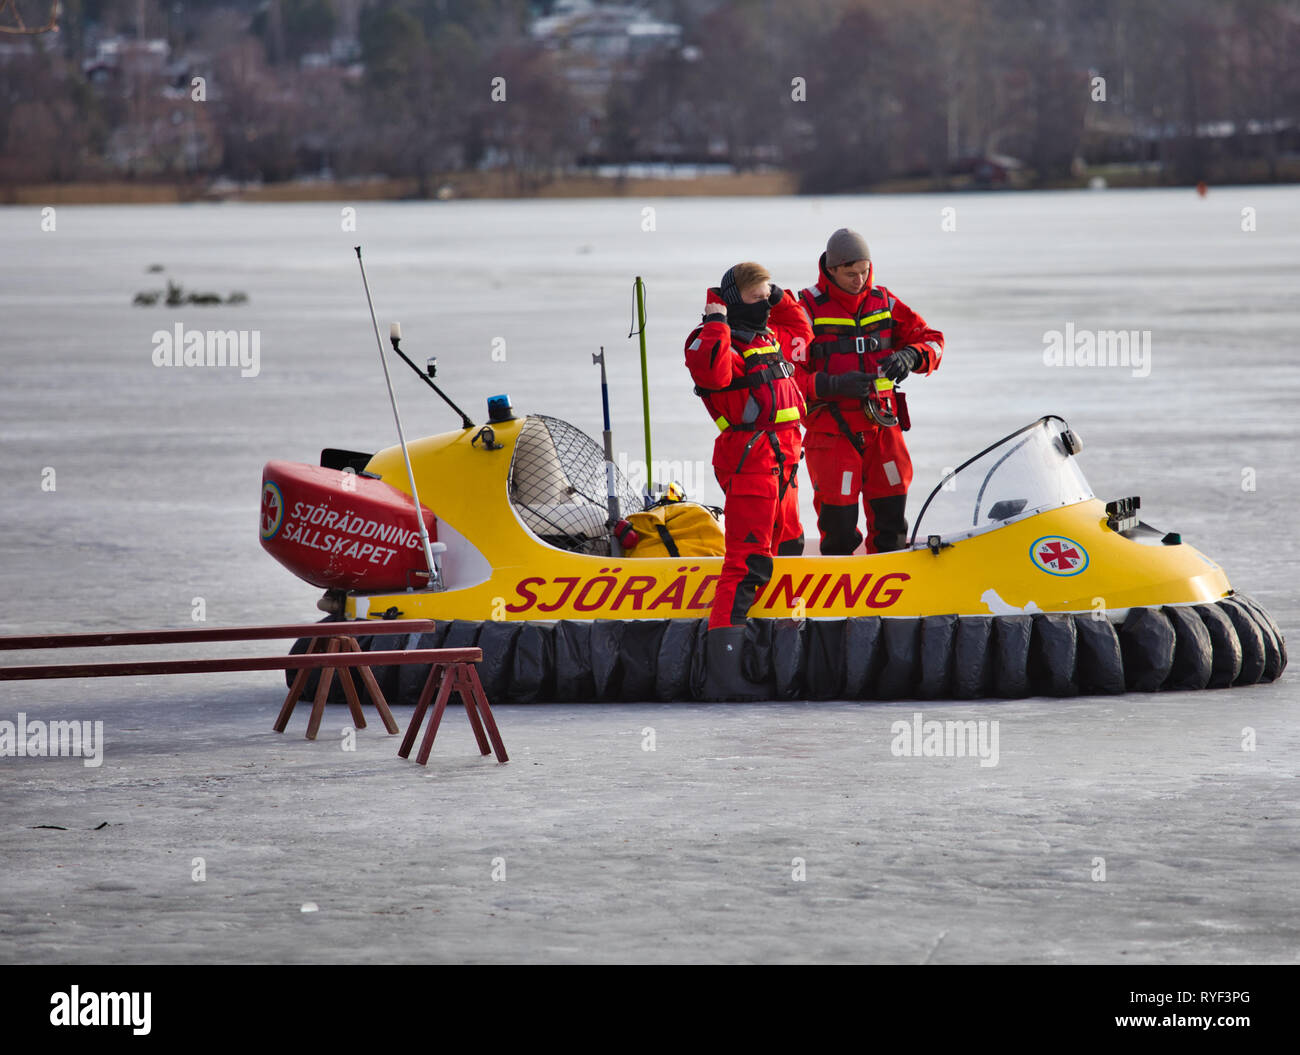 Aéroglisseur ouvert et de l'équipage de l'Agence suédoise de la Société de sauvetage en mer sur la glace d'un lac Malaren, Sigtuna, Suède, Scandinavie Banque D'Images